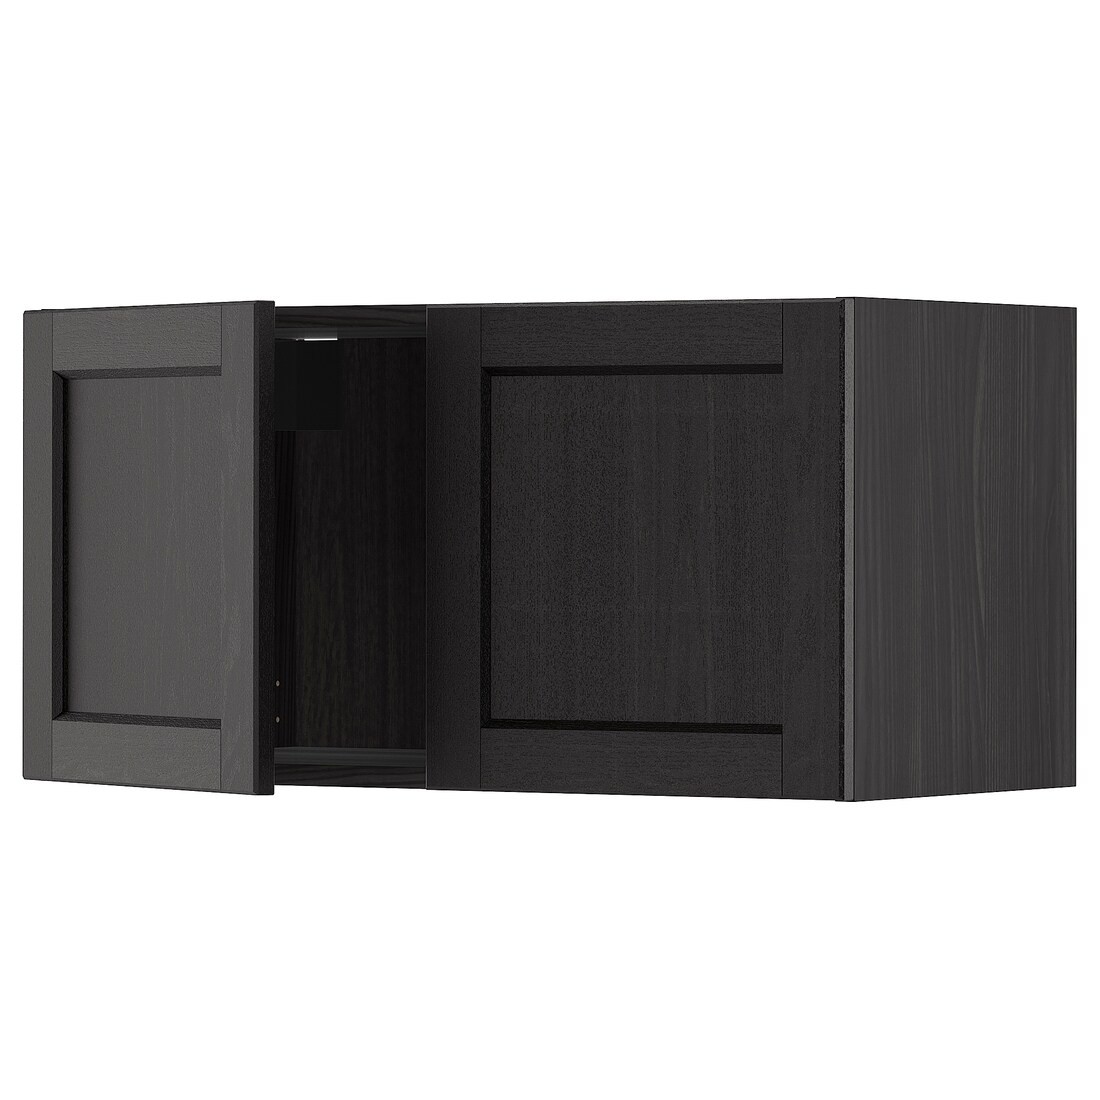 IKEA METOD МЕТОД Навесной шкаф с 2 дверями, черный / Lerhyttan черная морилка, 80x40 см 99465854 994.658.54